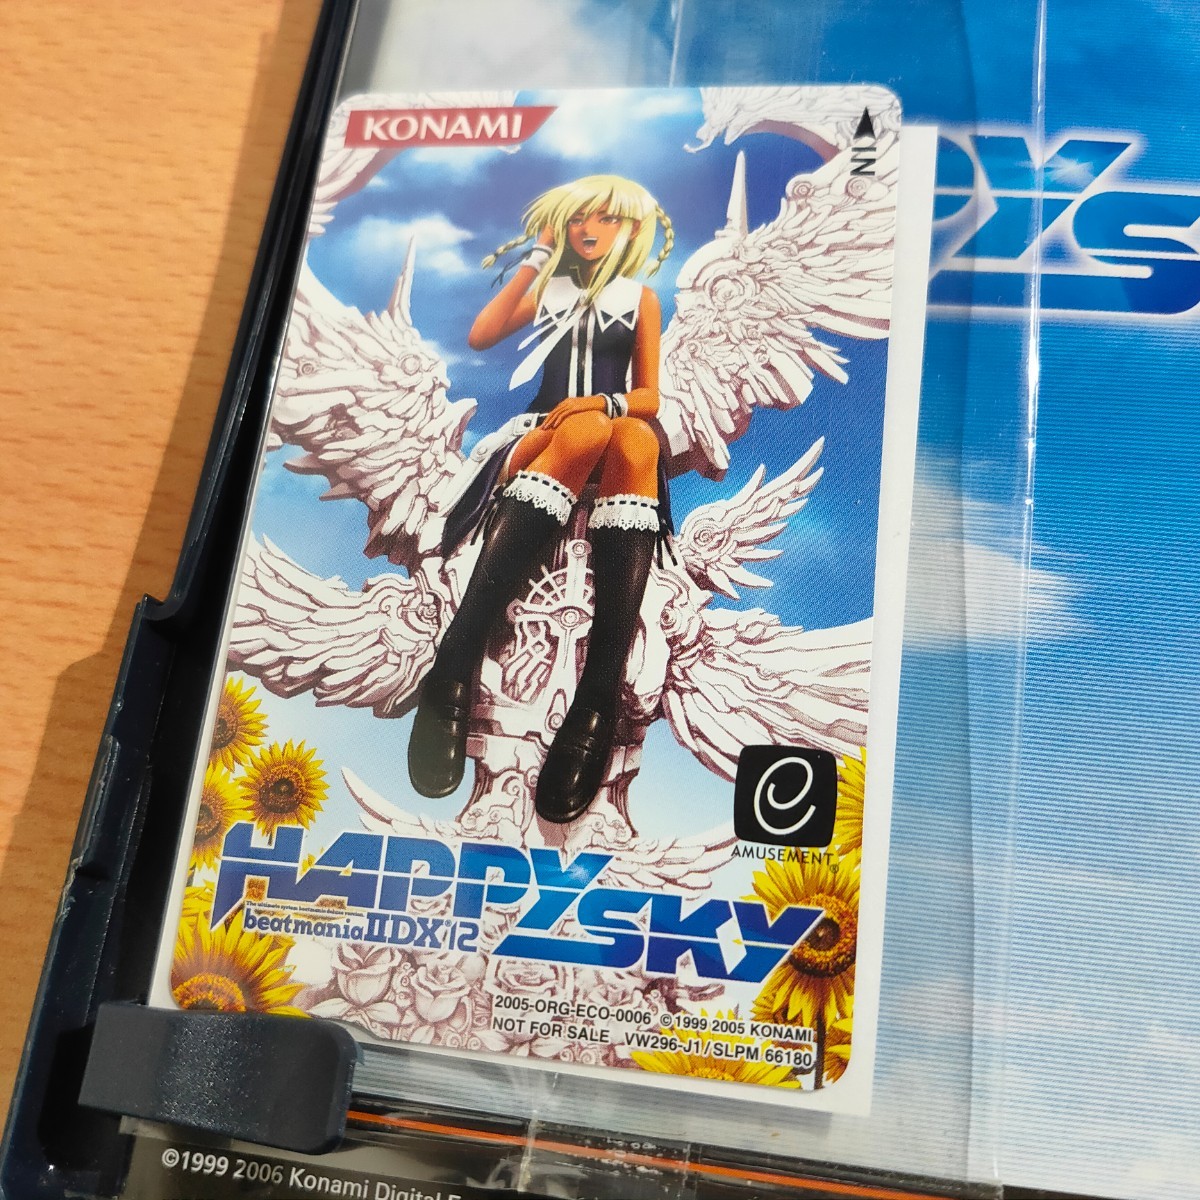 ビートマニア beatmania IIDX 12 HAPPY SKY PS2ソフト カード付き